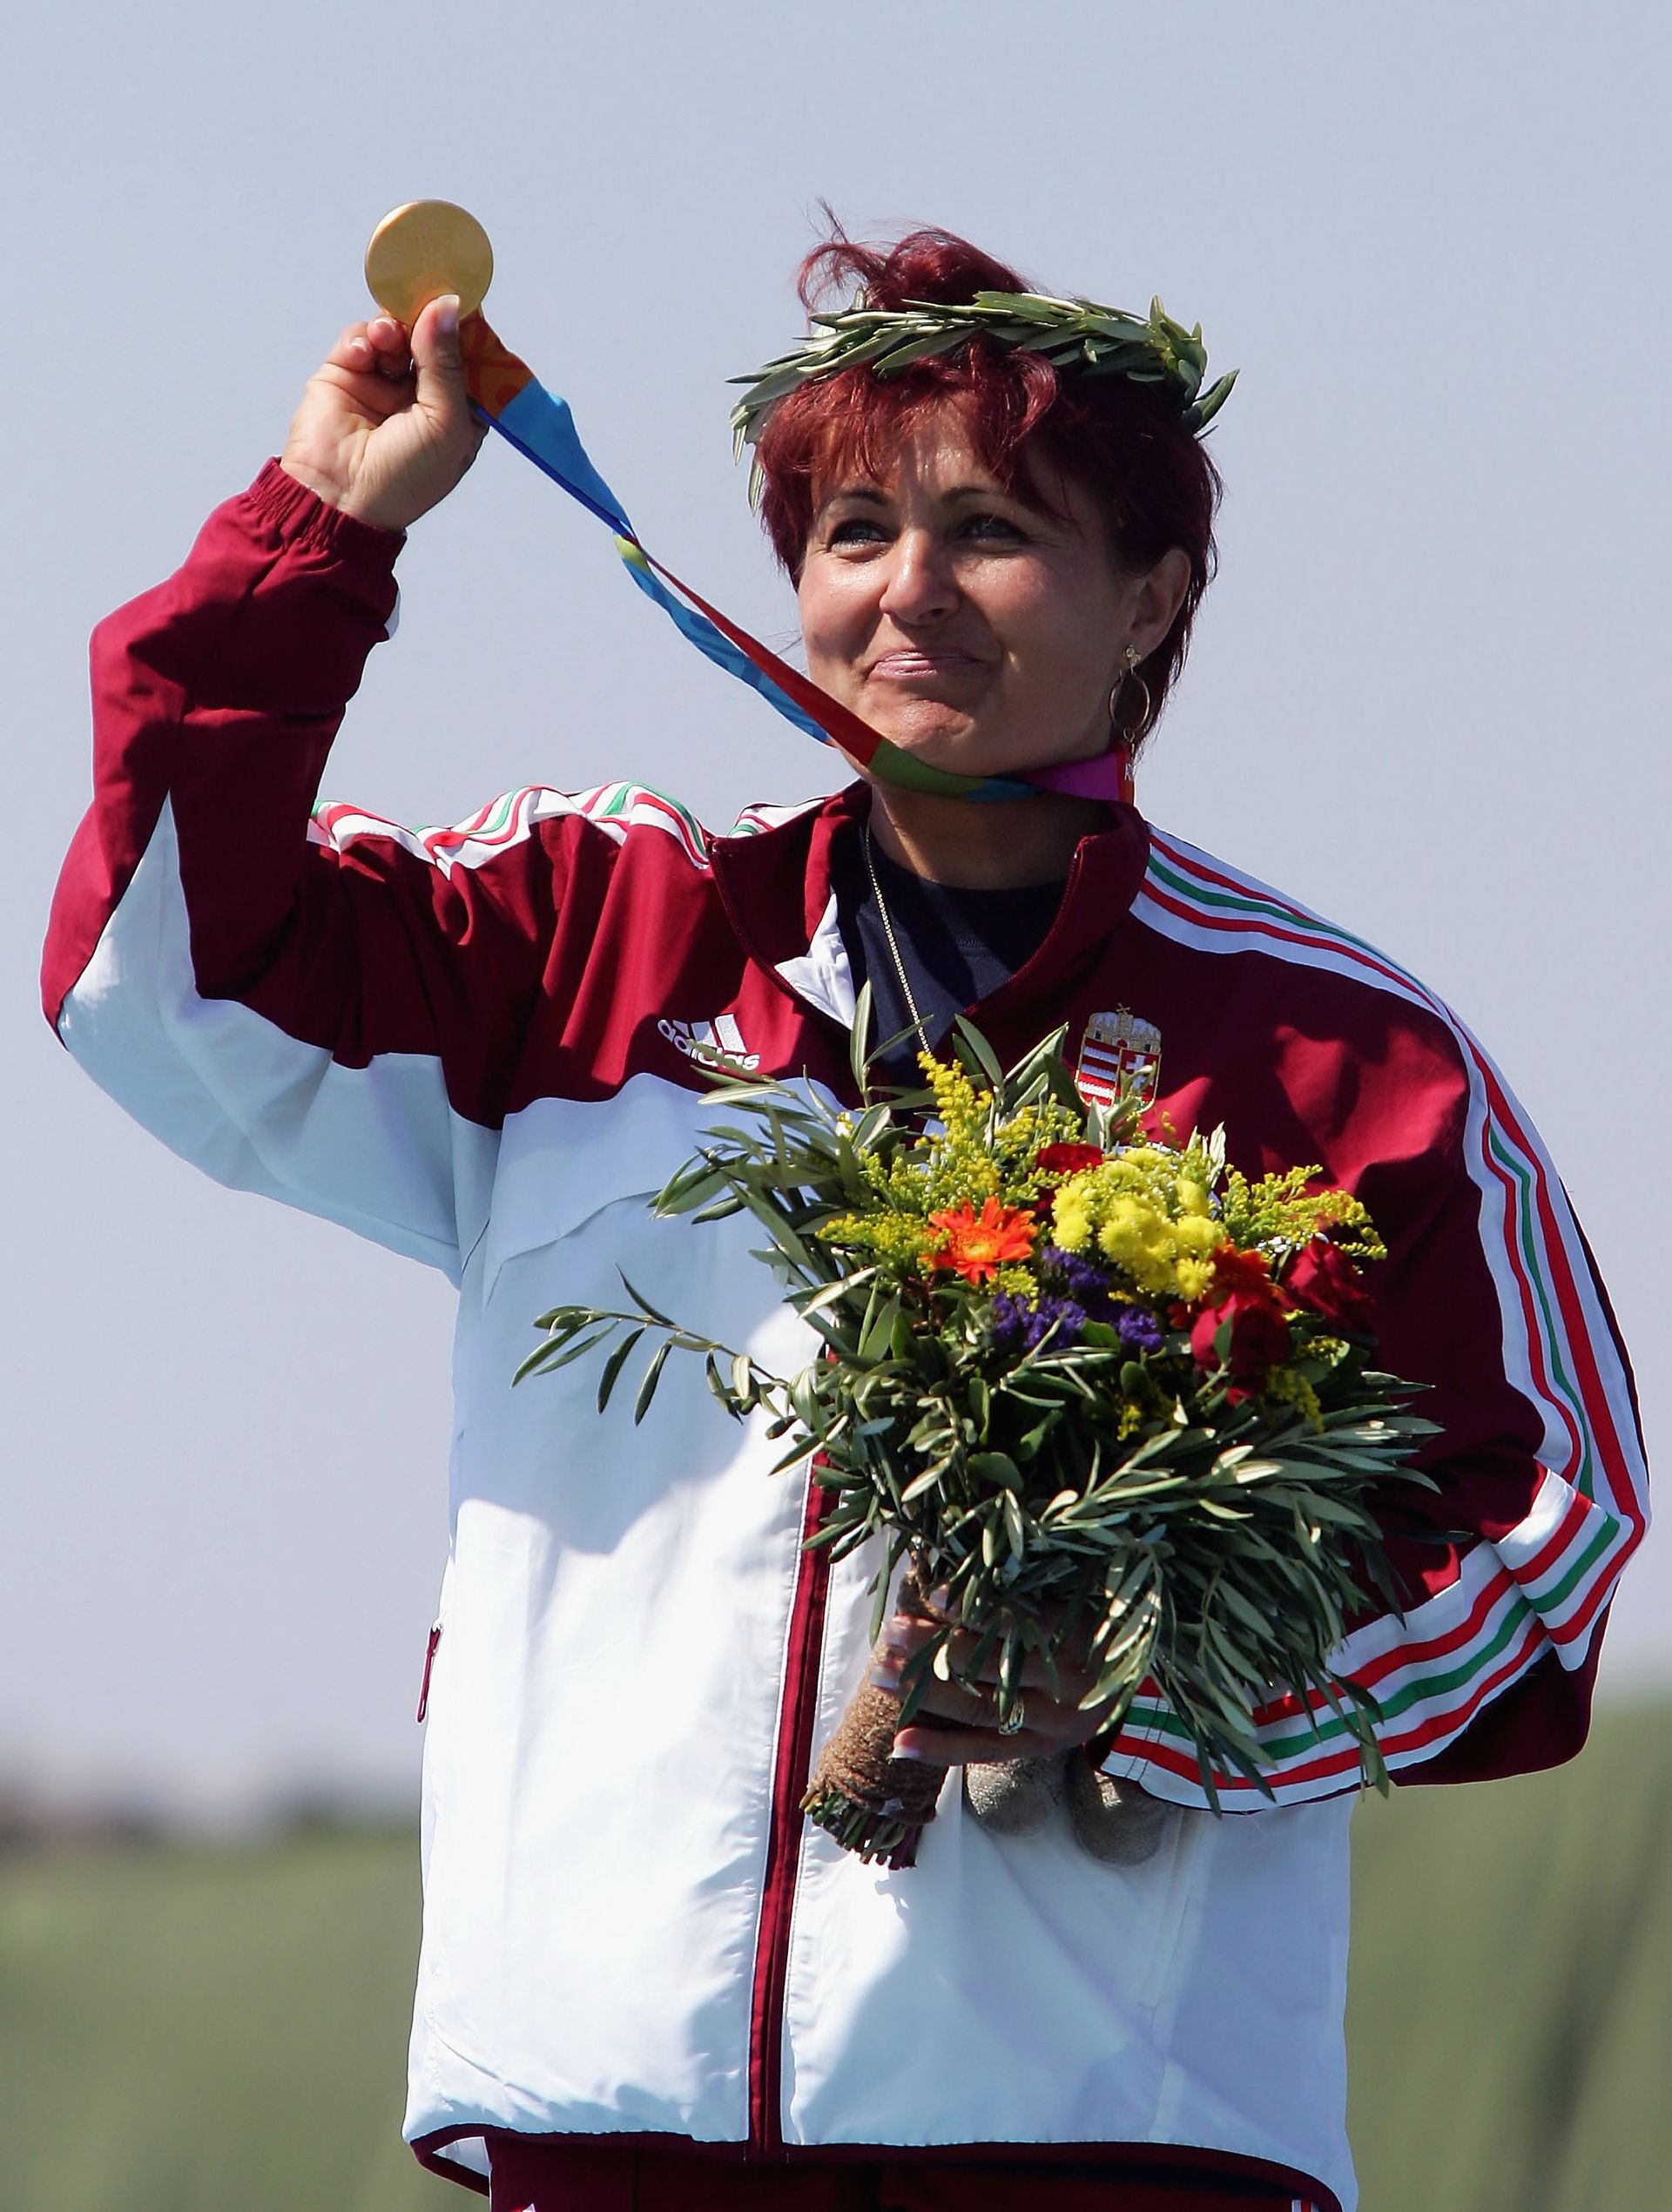 Igaly Diána a 2004-es athéni olimpián ért csúcsra skeetben /Fotó: Getty Images